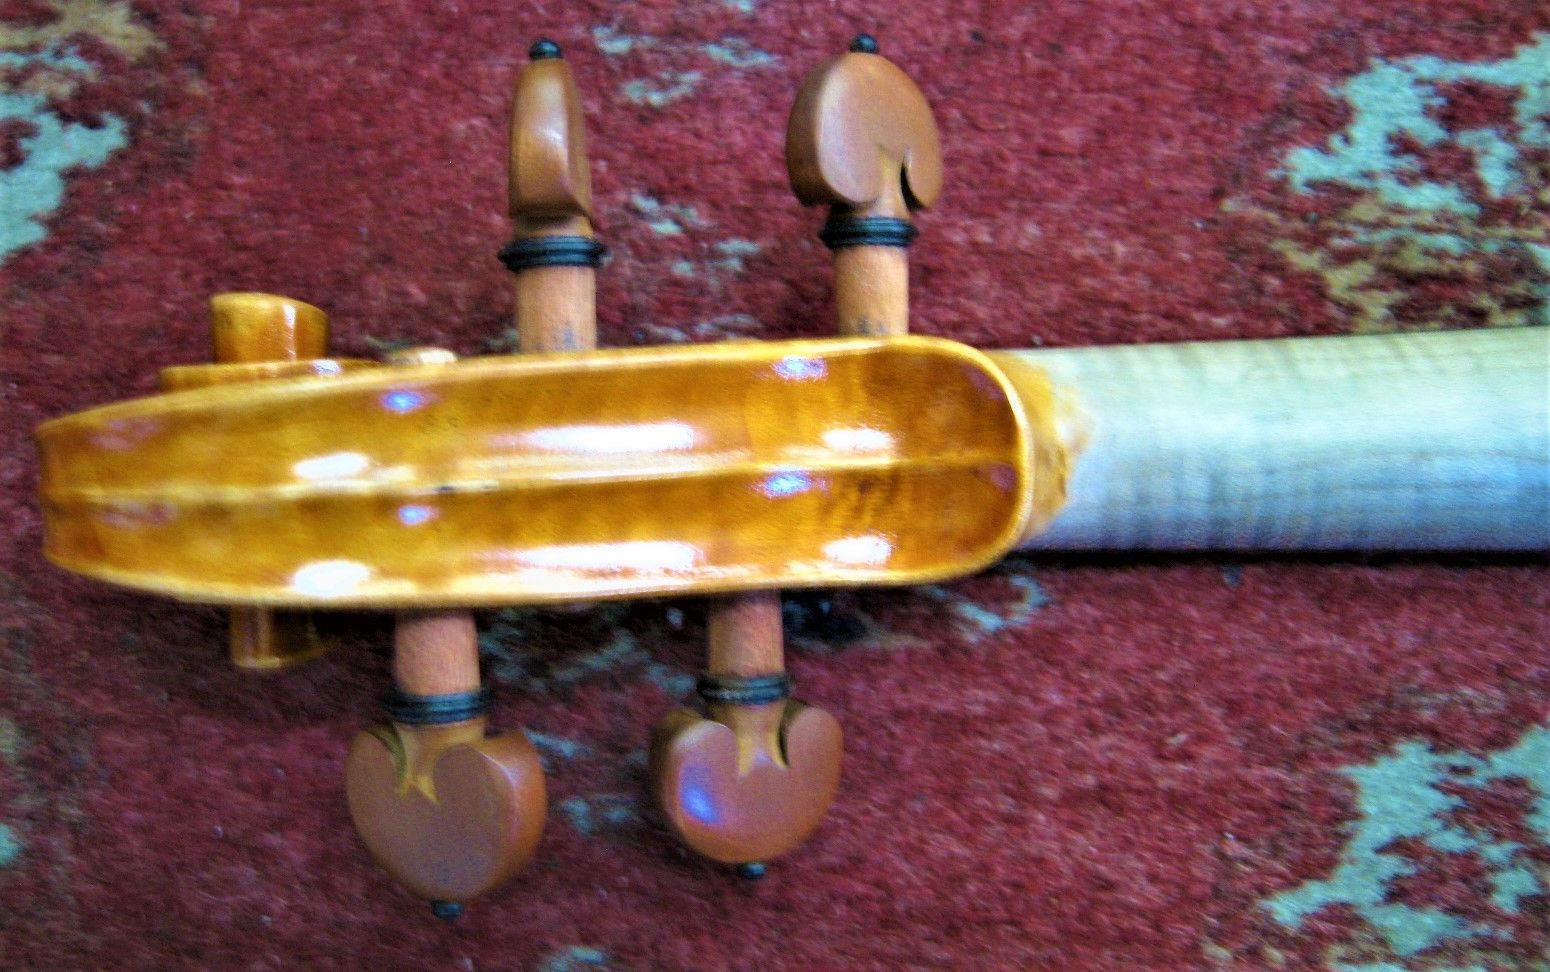 極上美品 ヴァイオリン 中国製19世紀フレンチ ストラディバリウス モデル